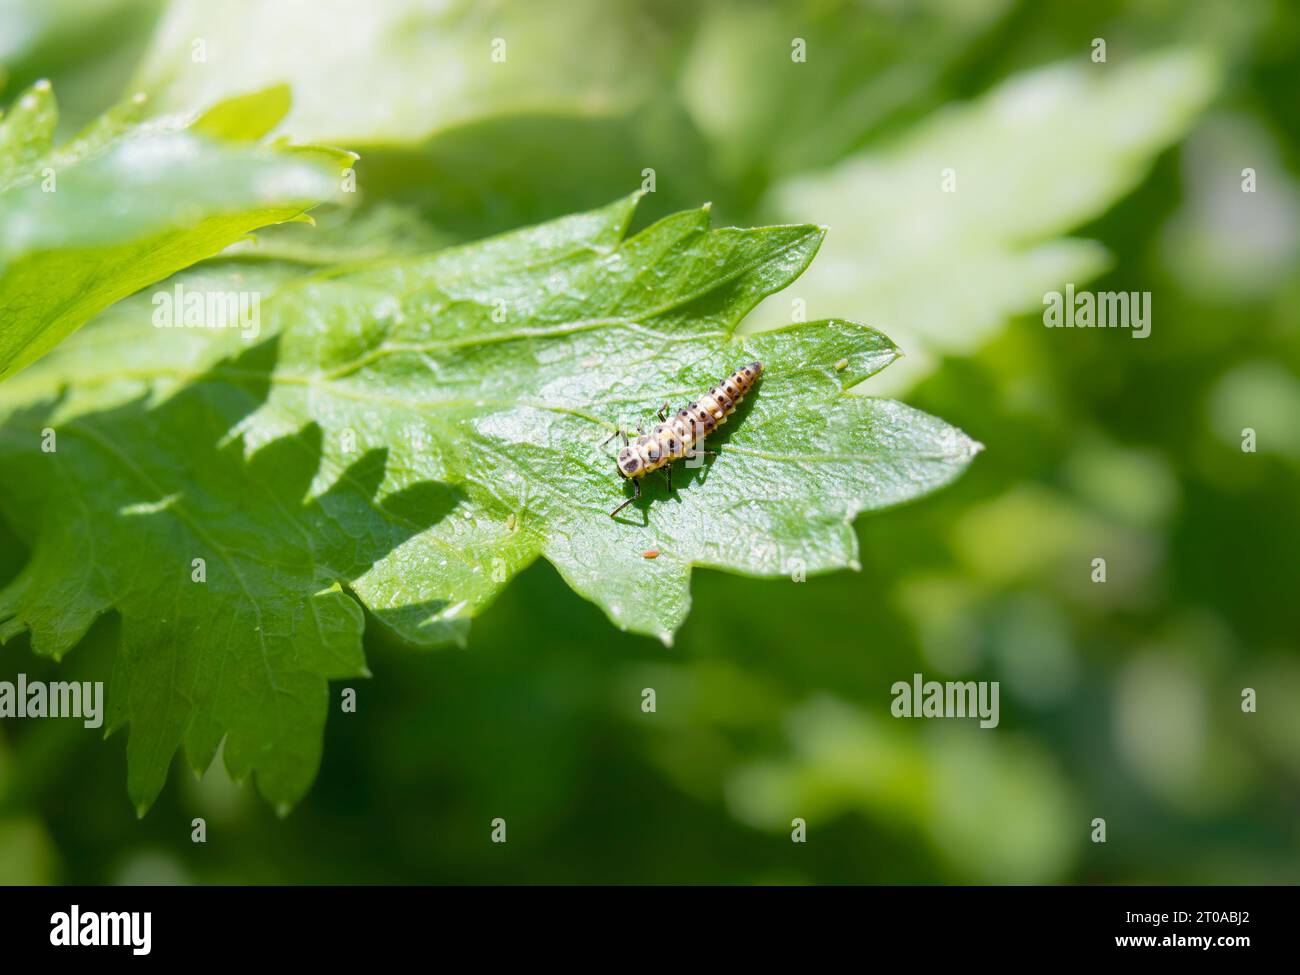 Marienkäfer-Larven auf Sellerieblättern. Junge Marienkäfer-Nymphe, die auf Pflanzenblatt ruht. Nützliches Insekt für Blattläuse befallene Pflanzen. Marienkäfer ernähren sich von Blattläusen, Milben Stockfoto